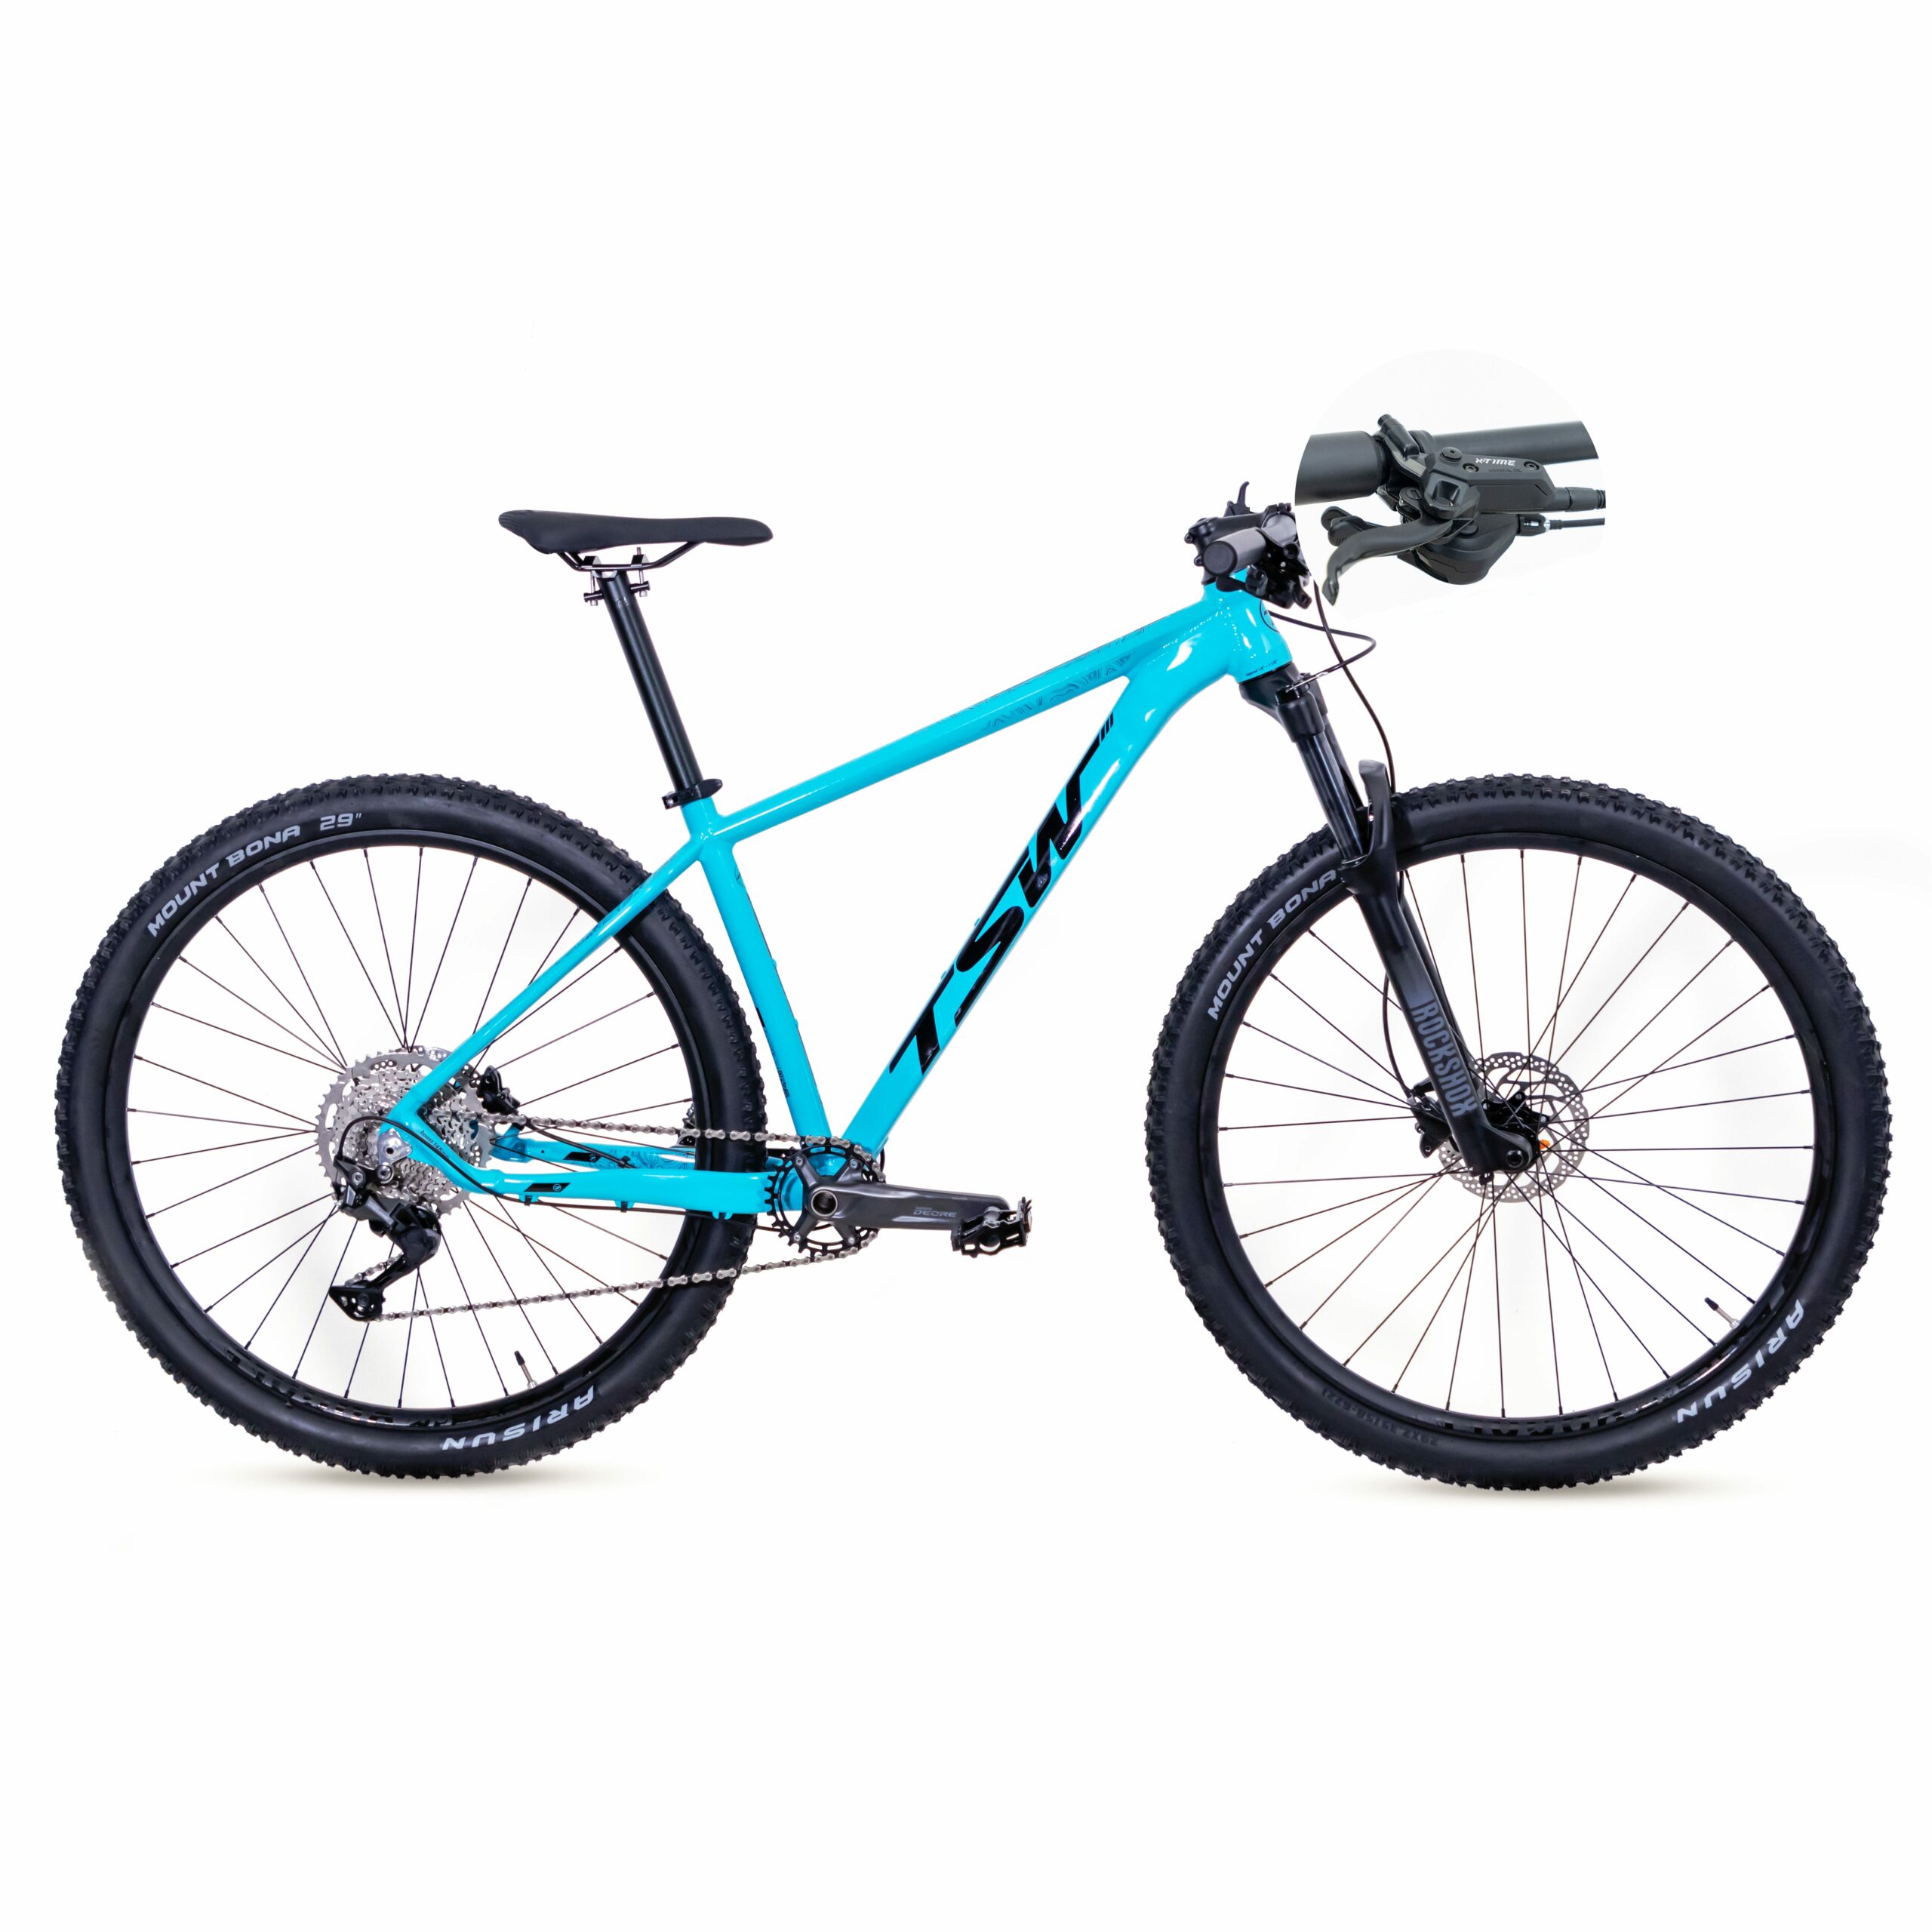 Bicicleta TSW Yukon - Freio X-Time | SH-10 | 2021/2022 - 15.5", Azul/Preto